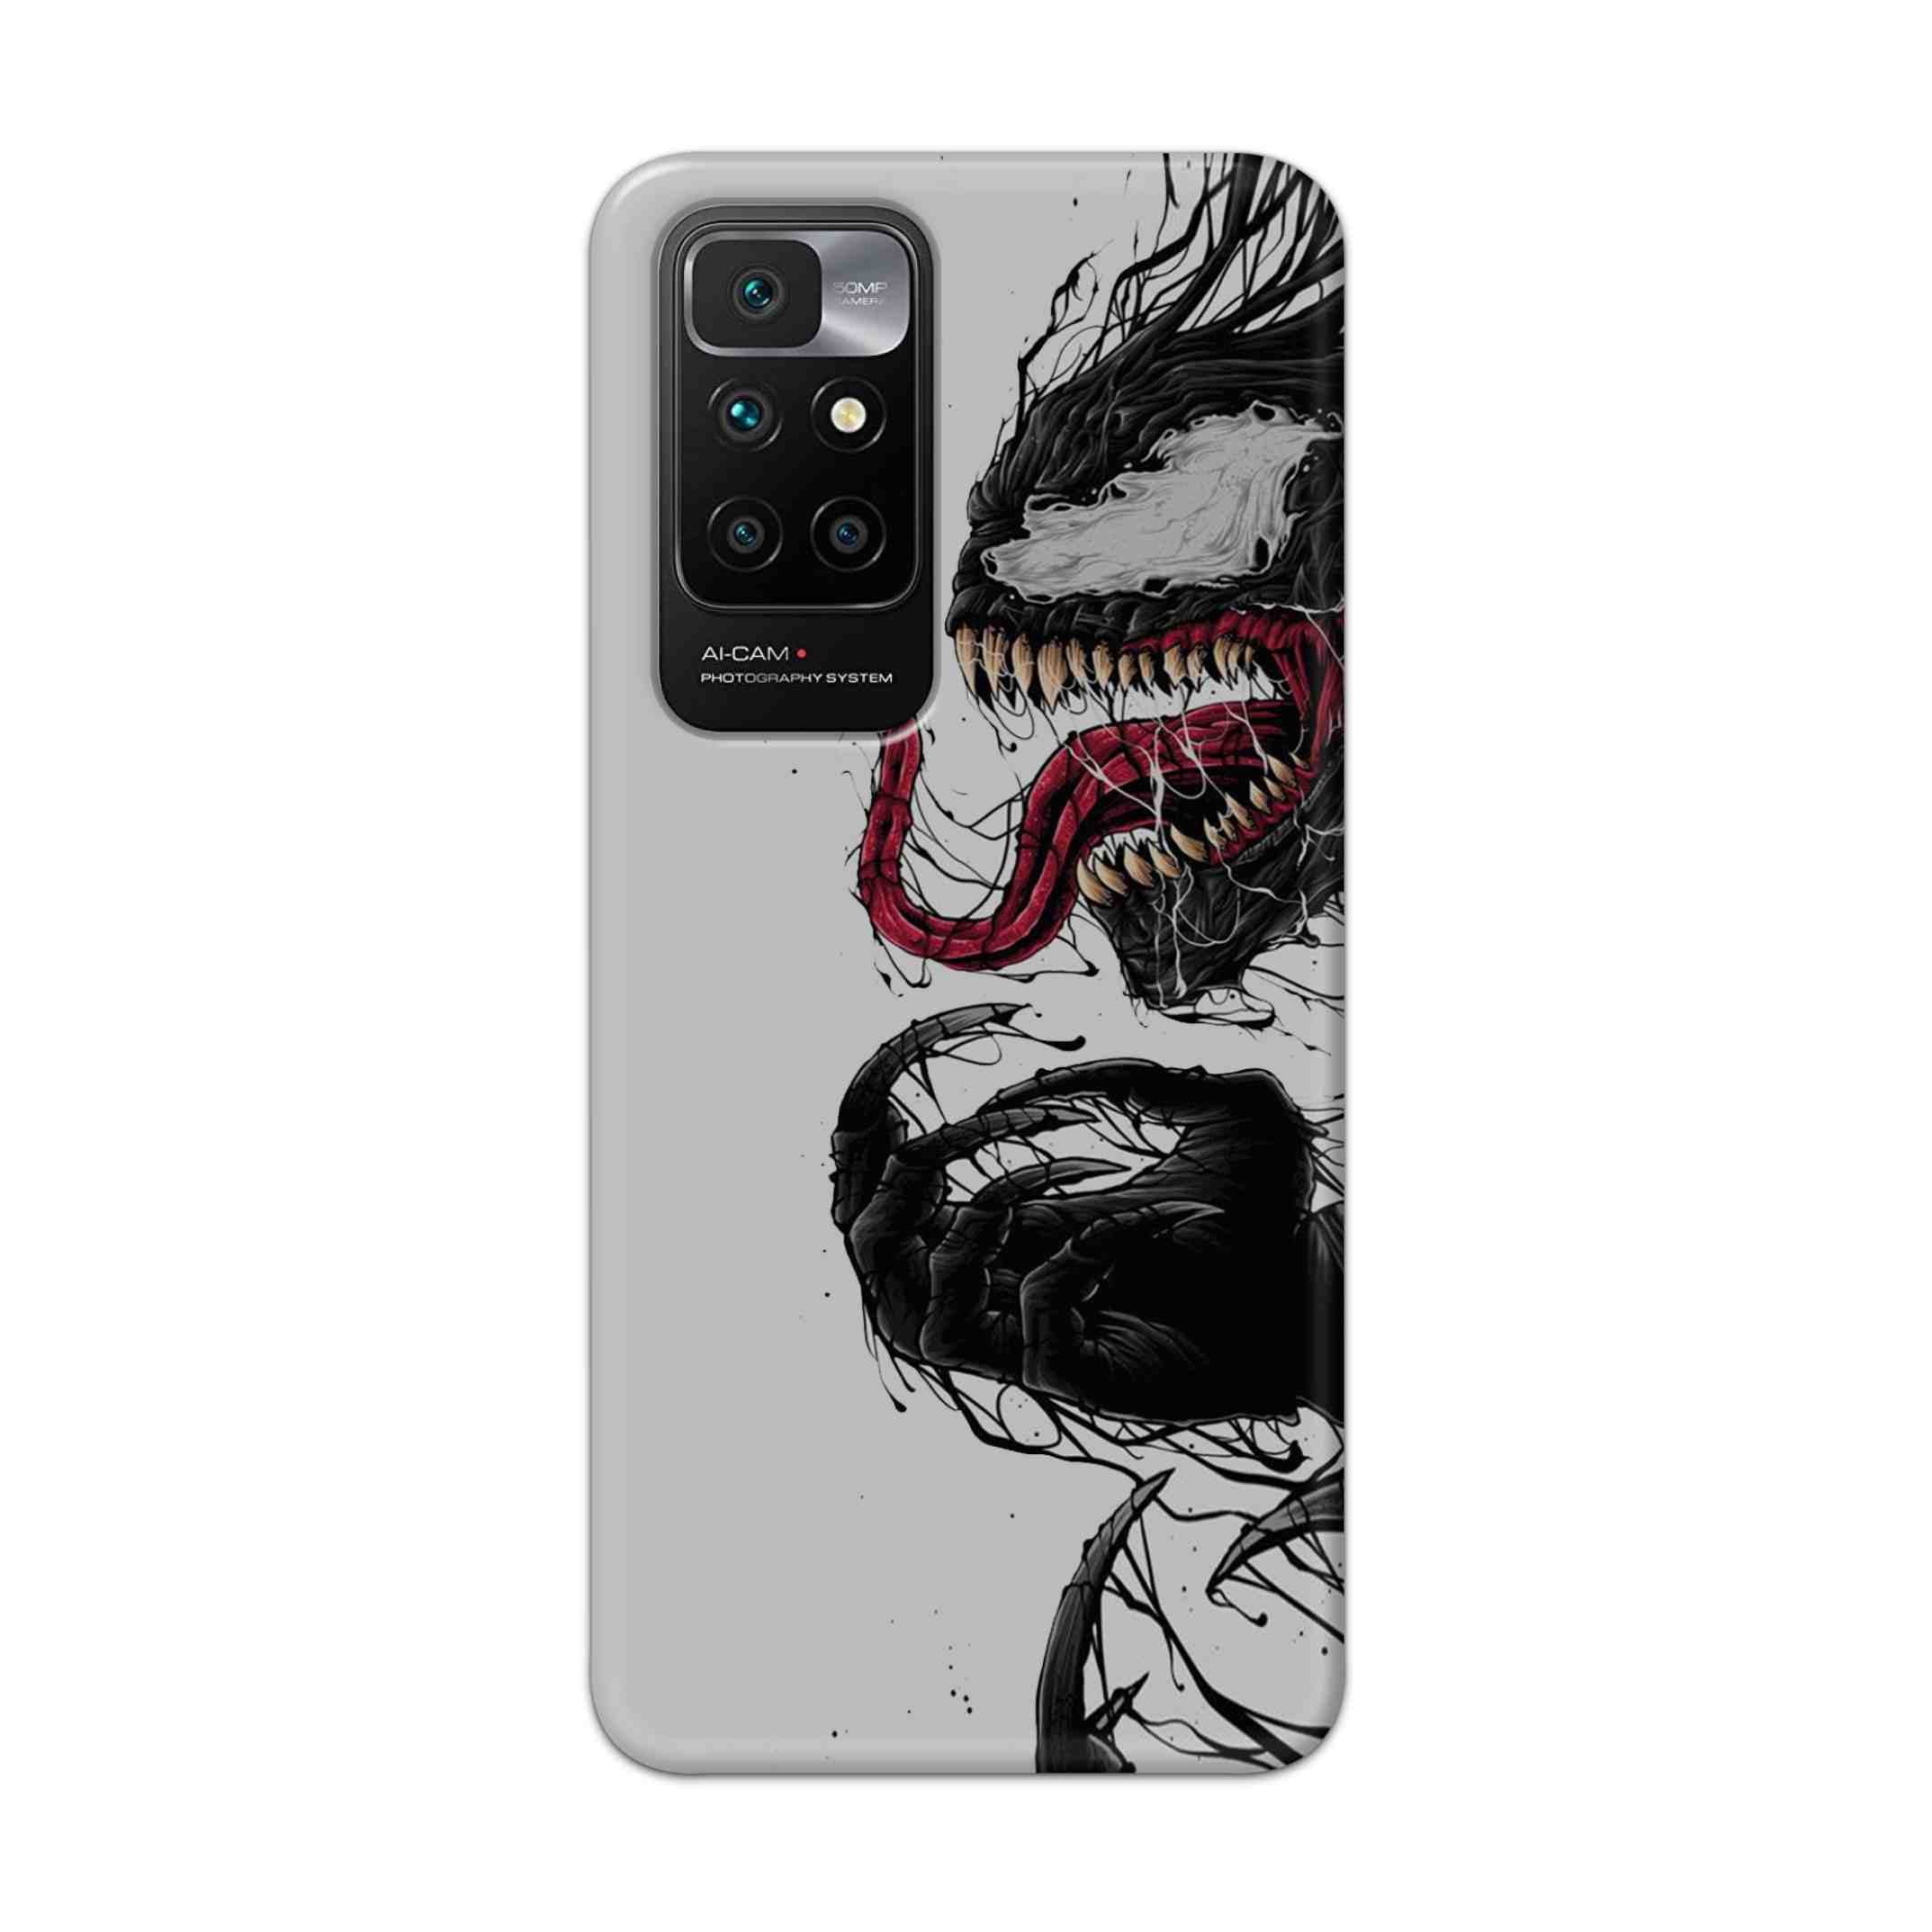 Buy Venom Crazy Hard Back Mobile Phone Case Cover For Redmi 10 Prime Online